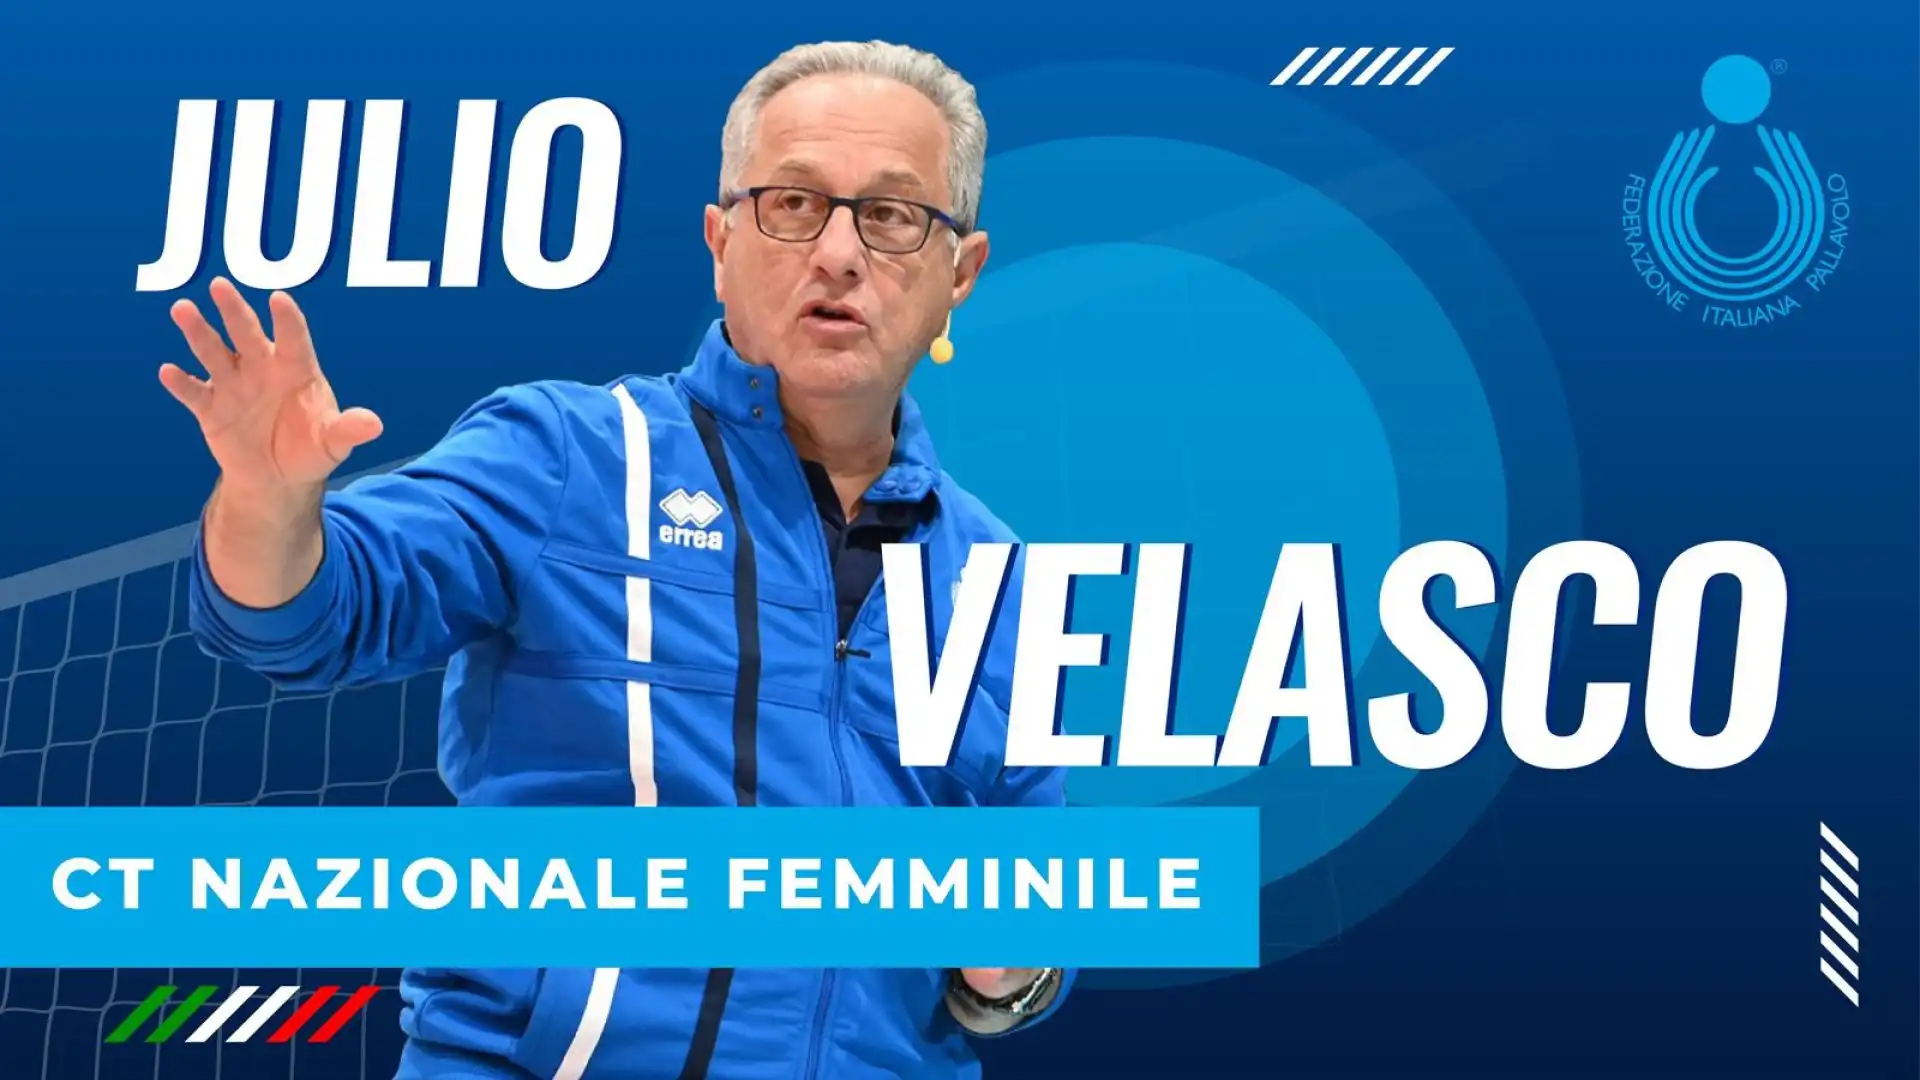 UYBA Volley Busto Arsizio comunica che da ogg, giorno in cui sarà presentato come nuovo ct della Nazionale, i il tecnico Julio Velasco non è più l'allenatore della squadra.